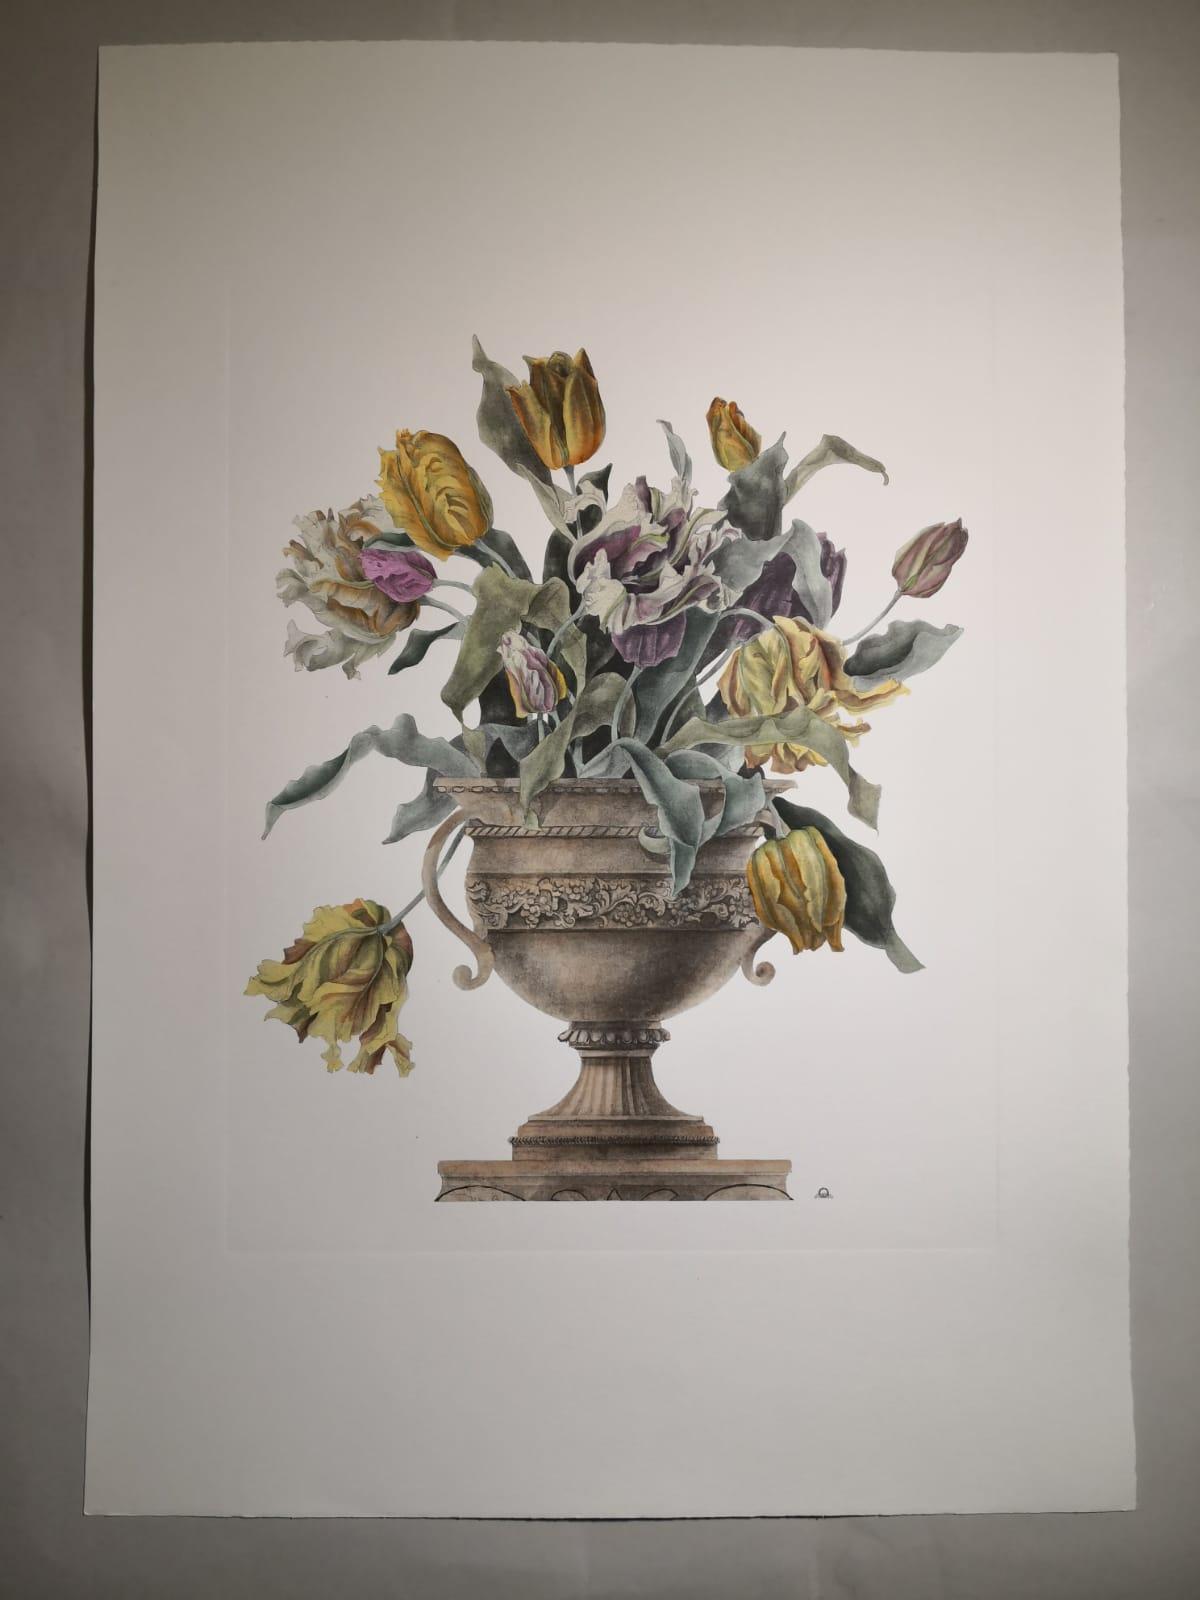 Eleganter und raffinierter Druck, der eine Vase mit Blumen darstellt, genauer gesagt eine Vase mit gelben und hellrosa Tulpen. 
Vier verschiedene Vasenaufdrucke stehen zur Verfügung, um eine farbenfrohe Komposition zu schaffen.
Alle Drucke werden